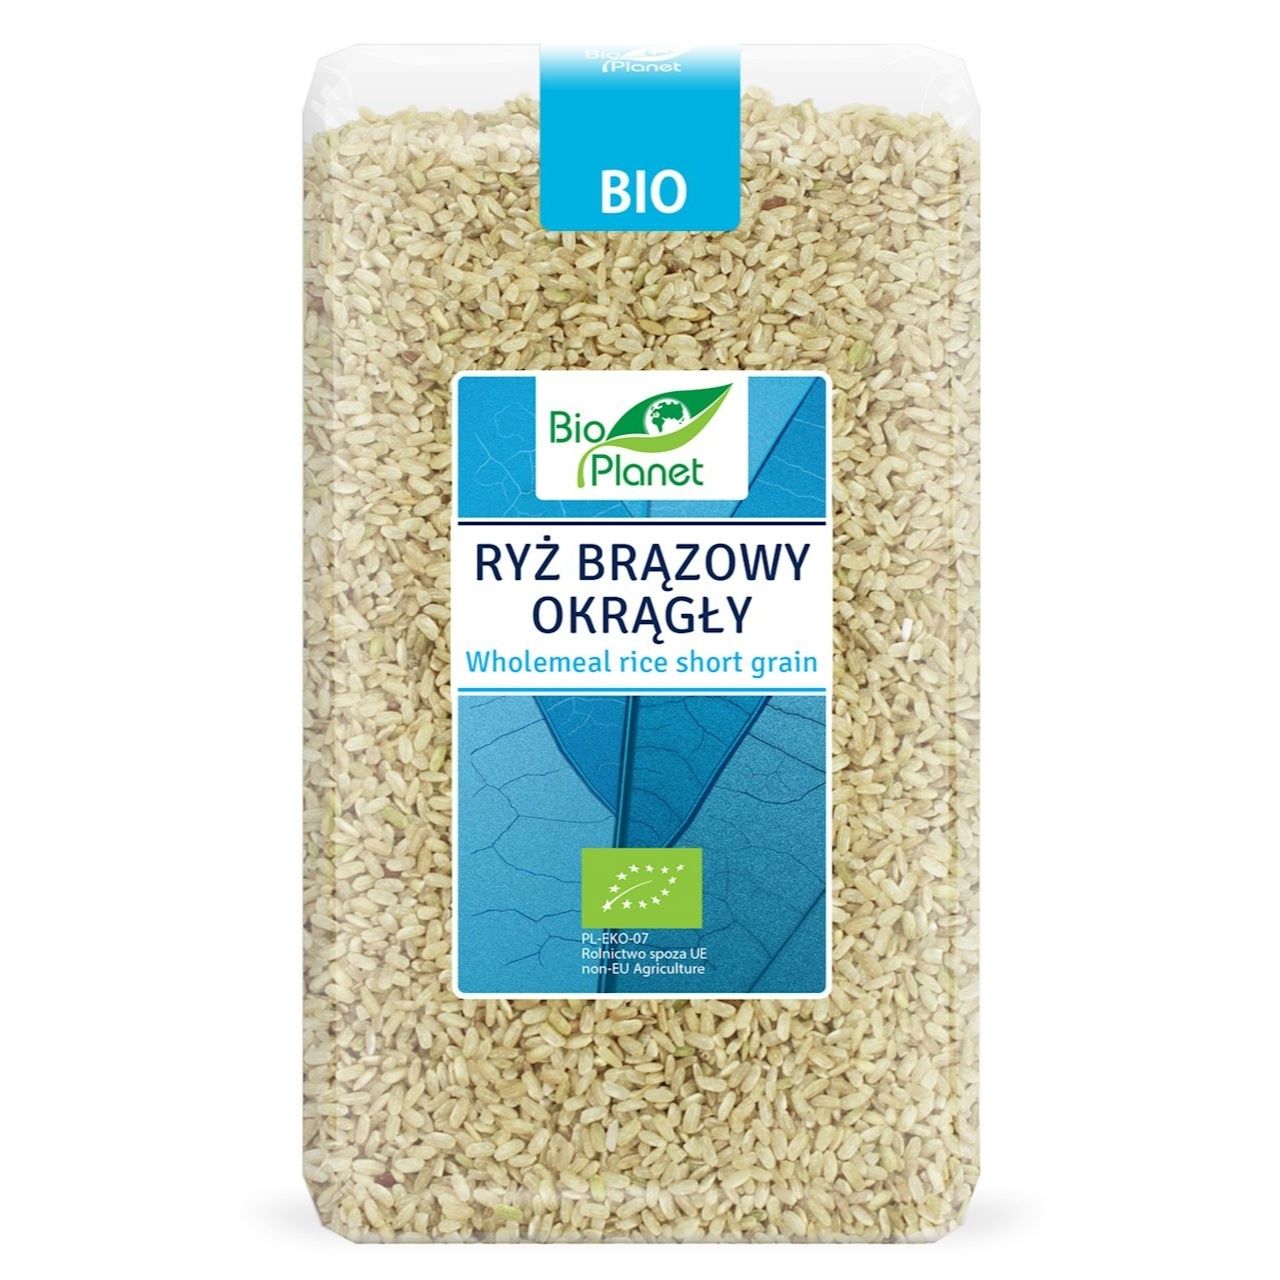 Ryż brązowy okrągły BIO 1 kg - Bio Planet